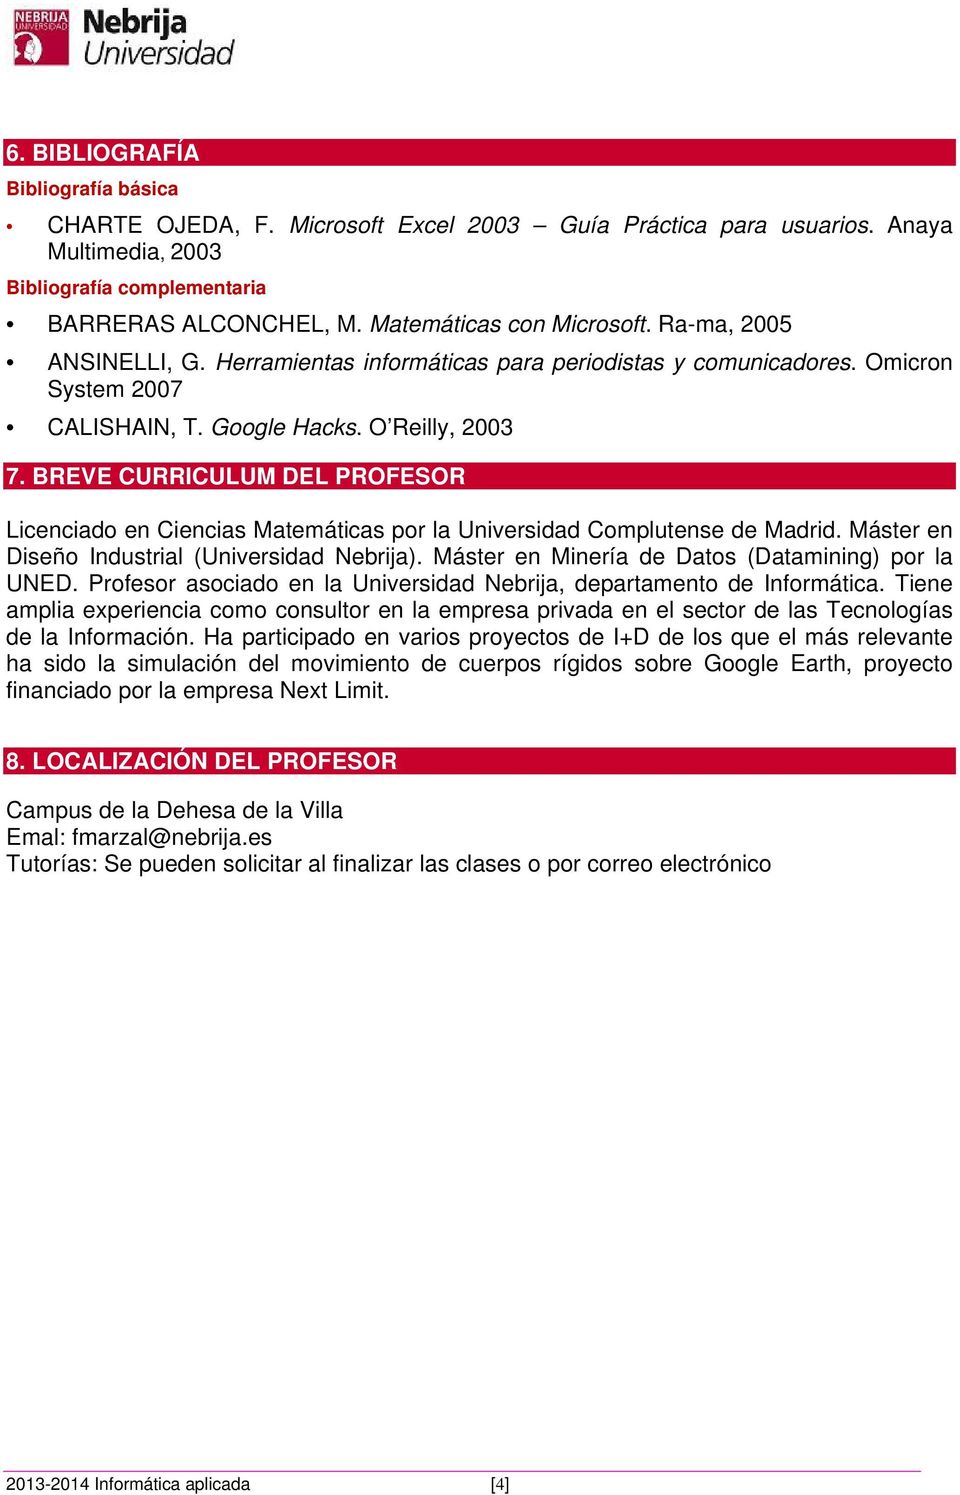 BREVE CURRICULUM DEL PROFESOR Licenciado en Ciencias Matemáticas por la Universidad Complutense de Madrid. Máster en Diseño Industrial (Universidad Nebrija).